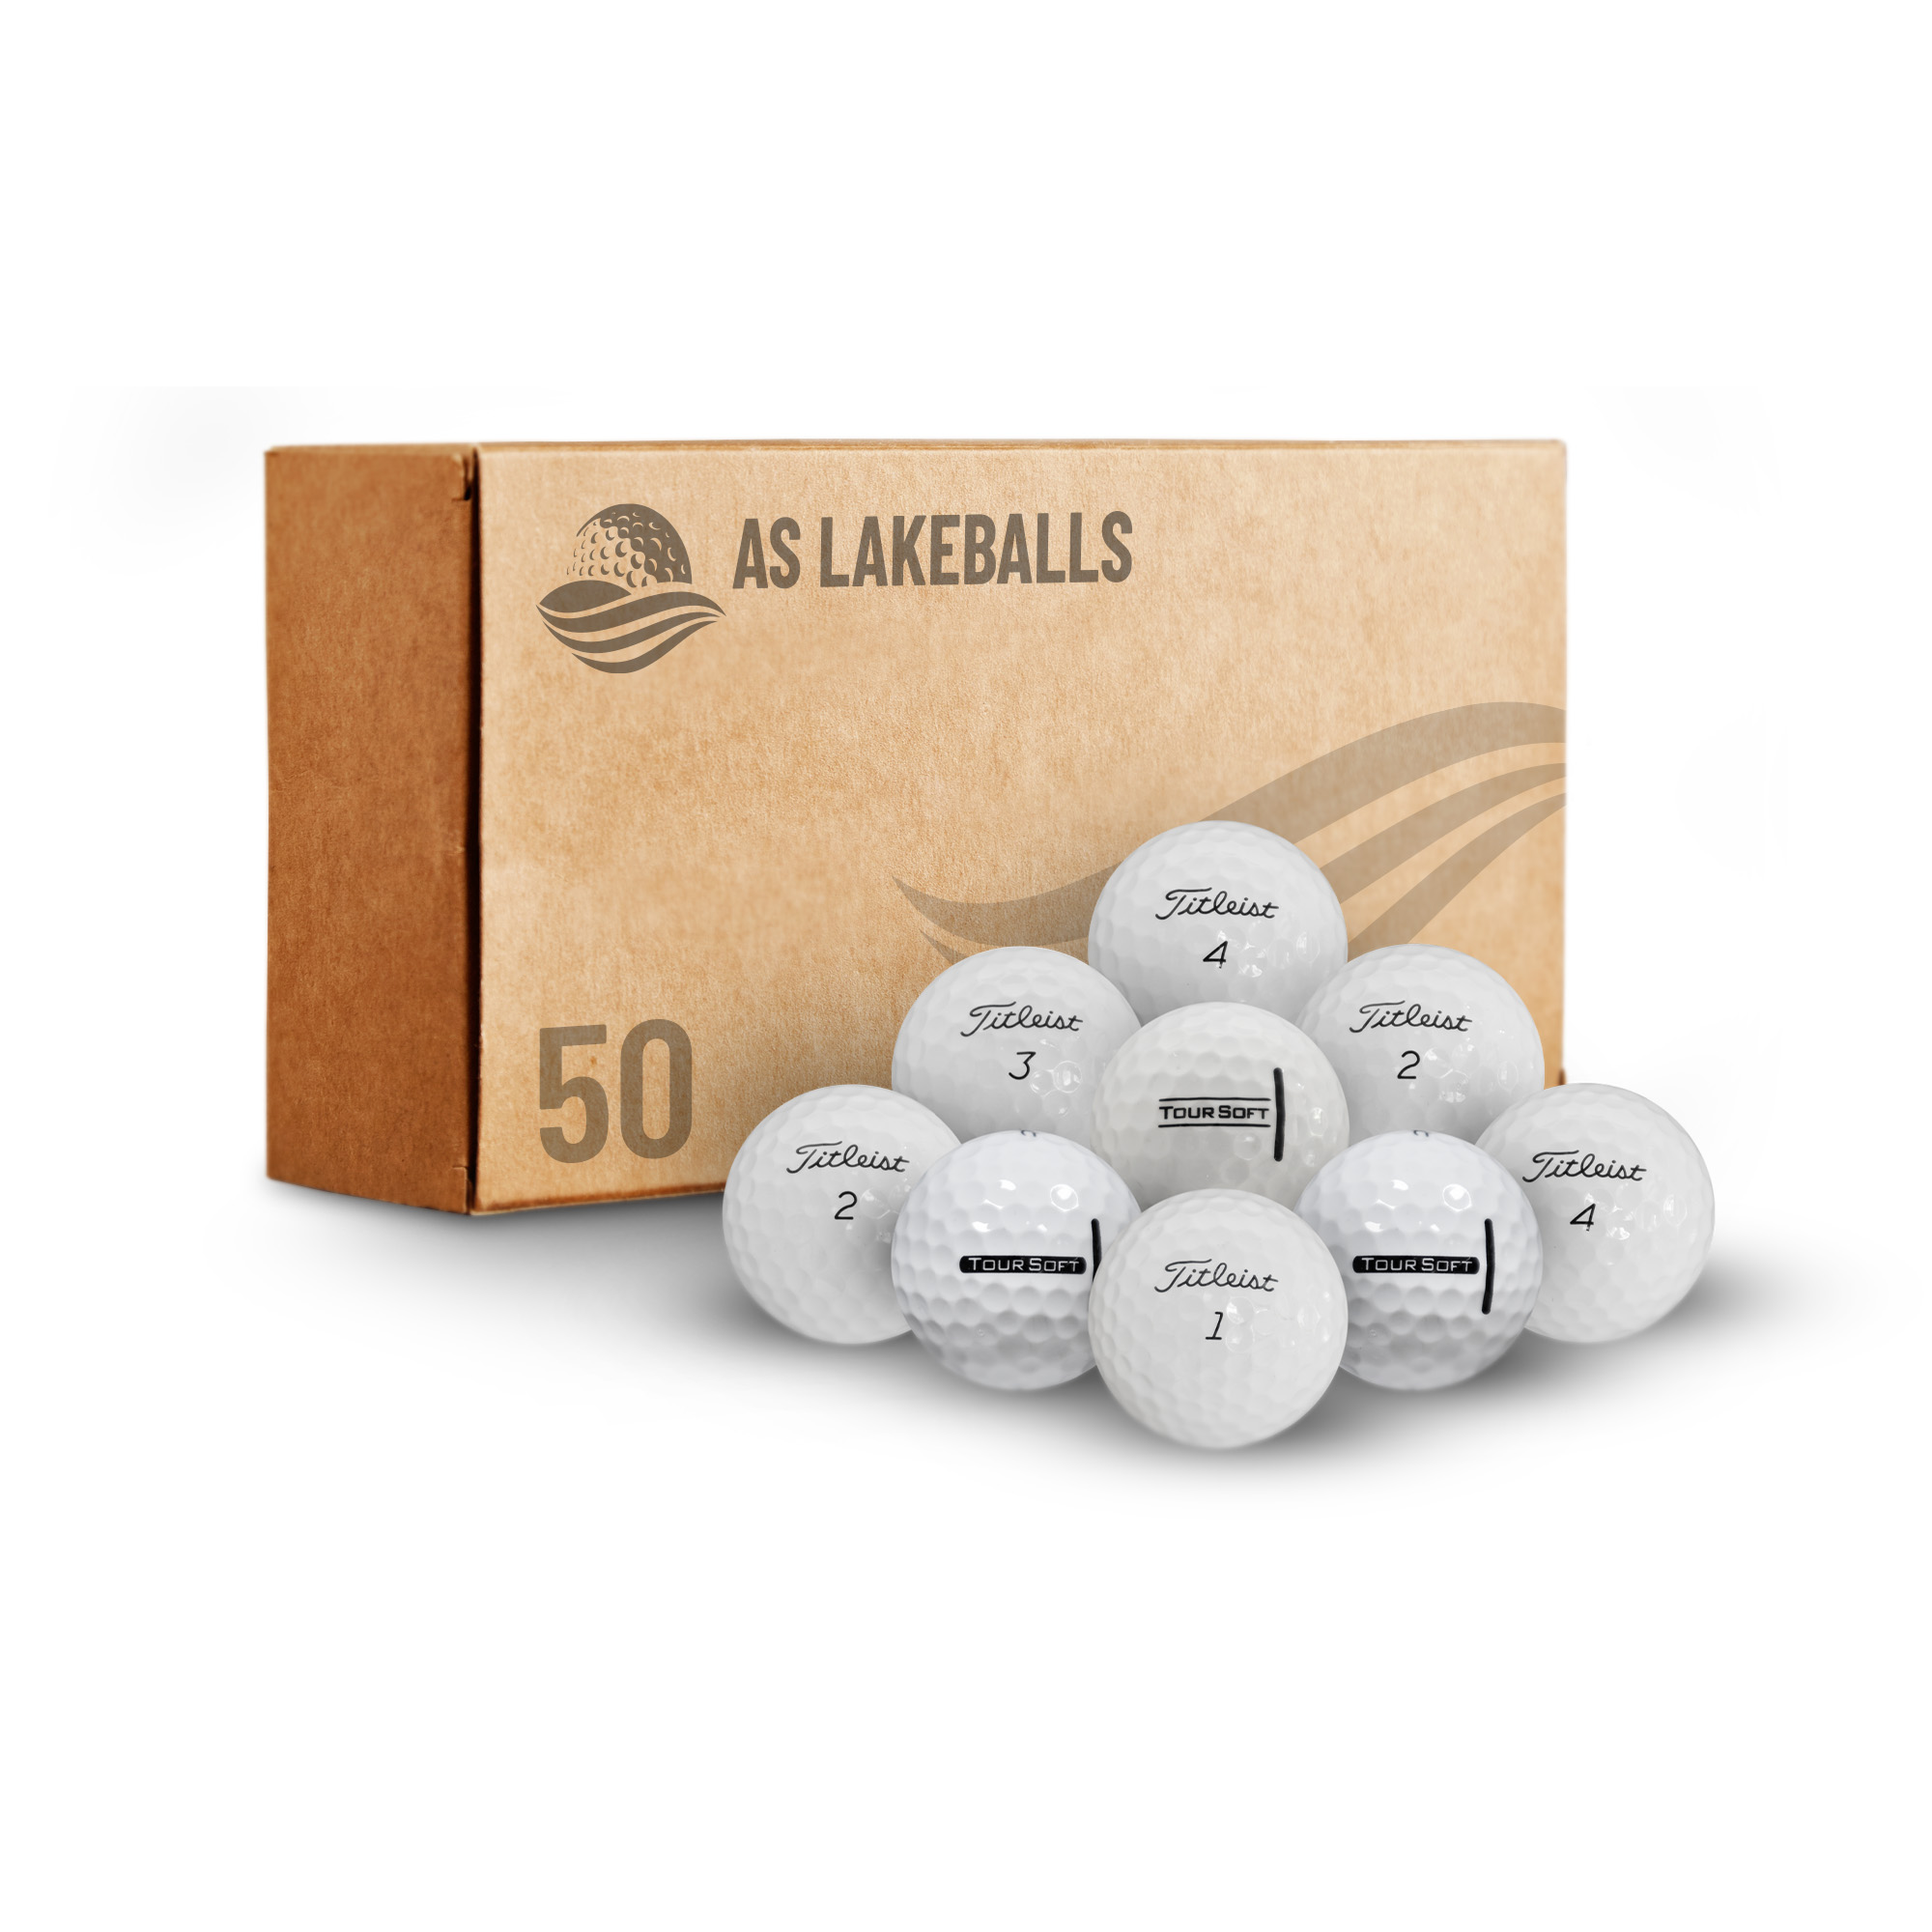 50 Stück Titleist Tour Soft AAAA Lakeballs bei AS Lakeballs günstig kaufen